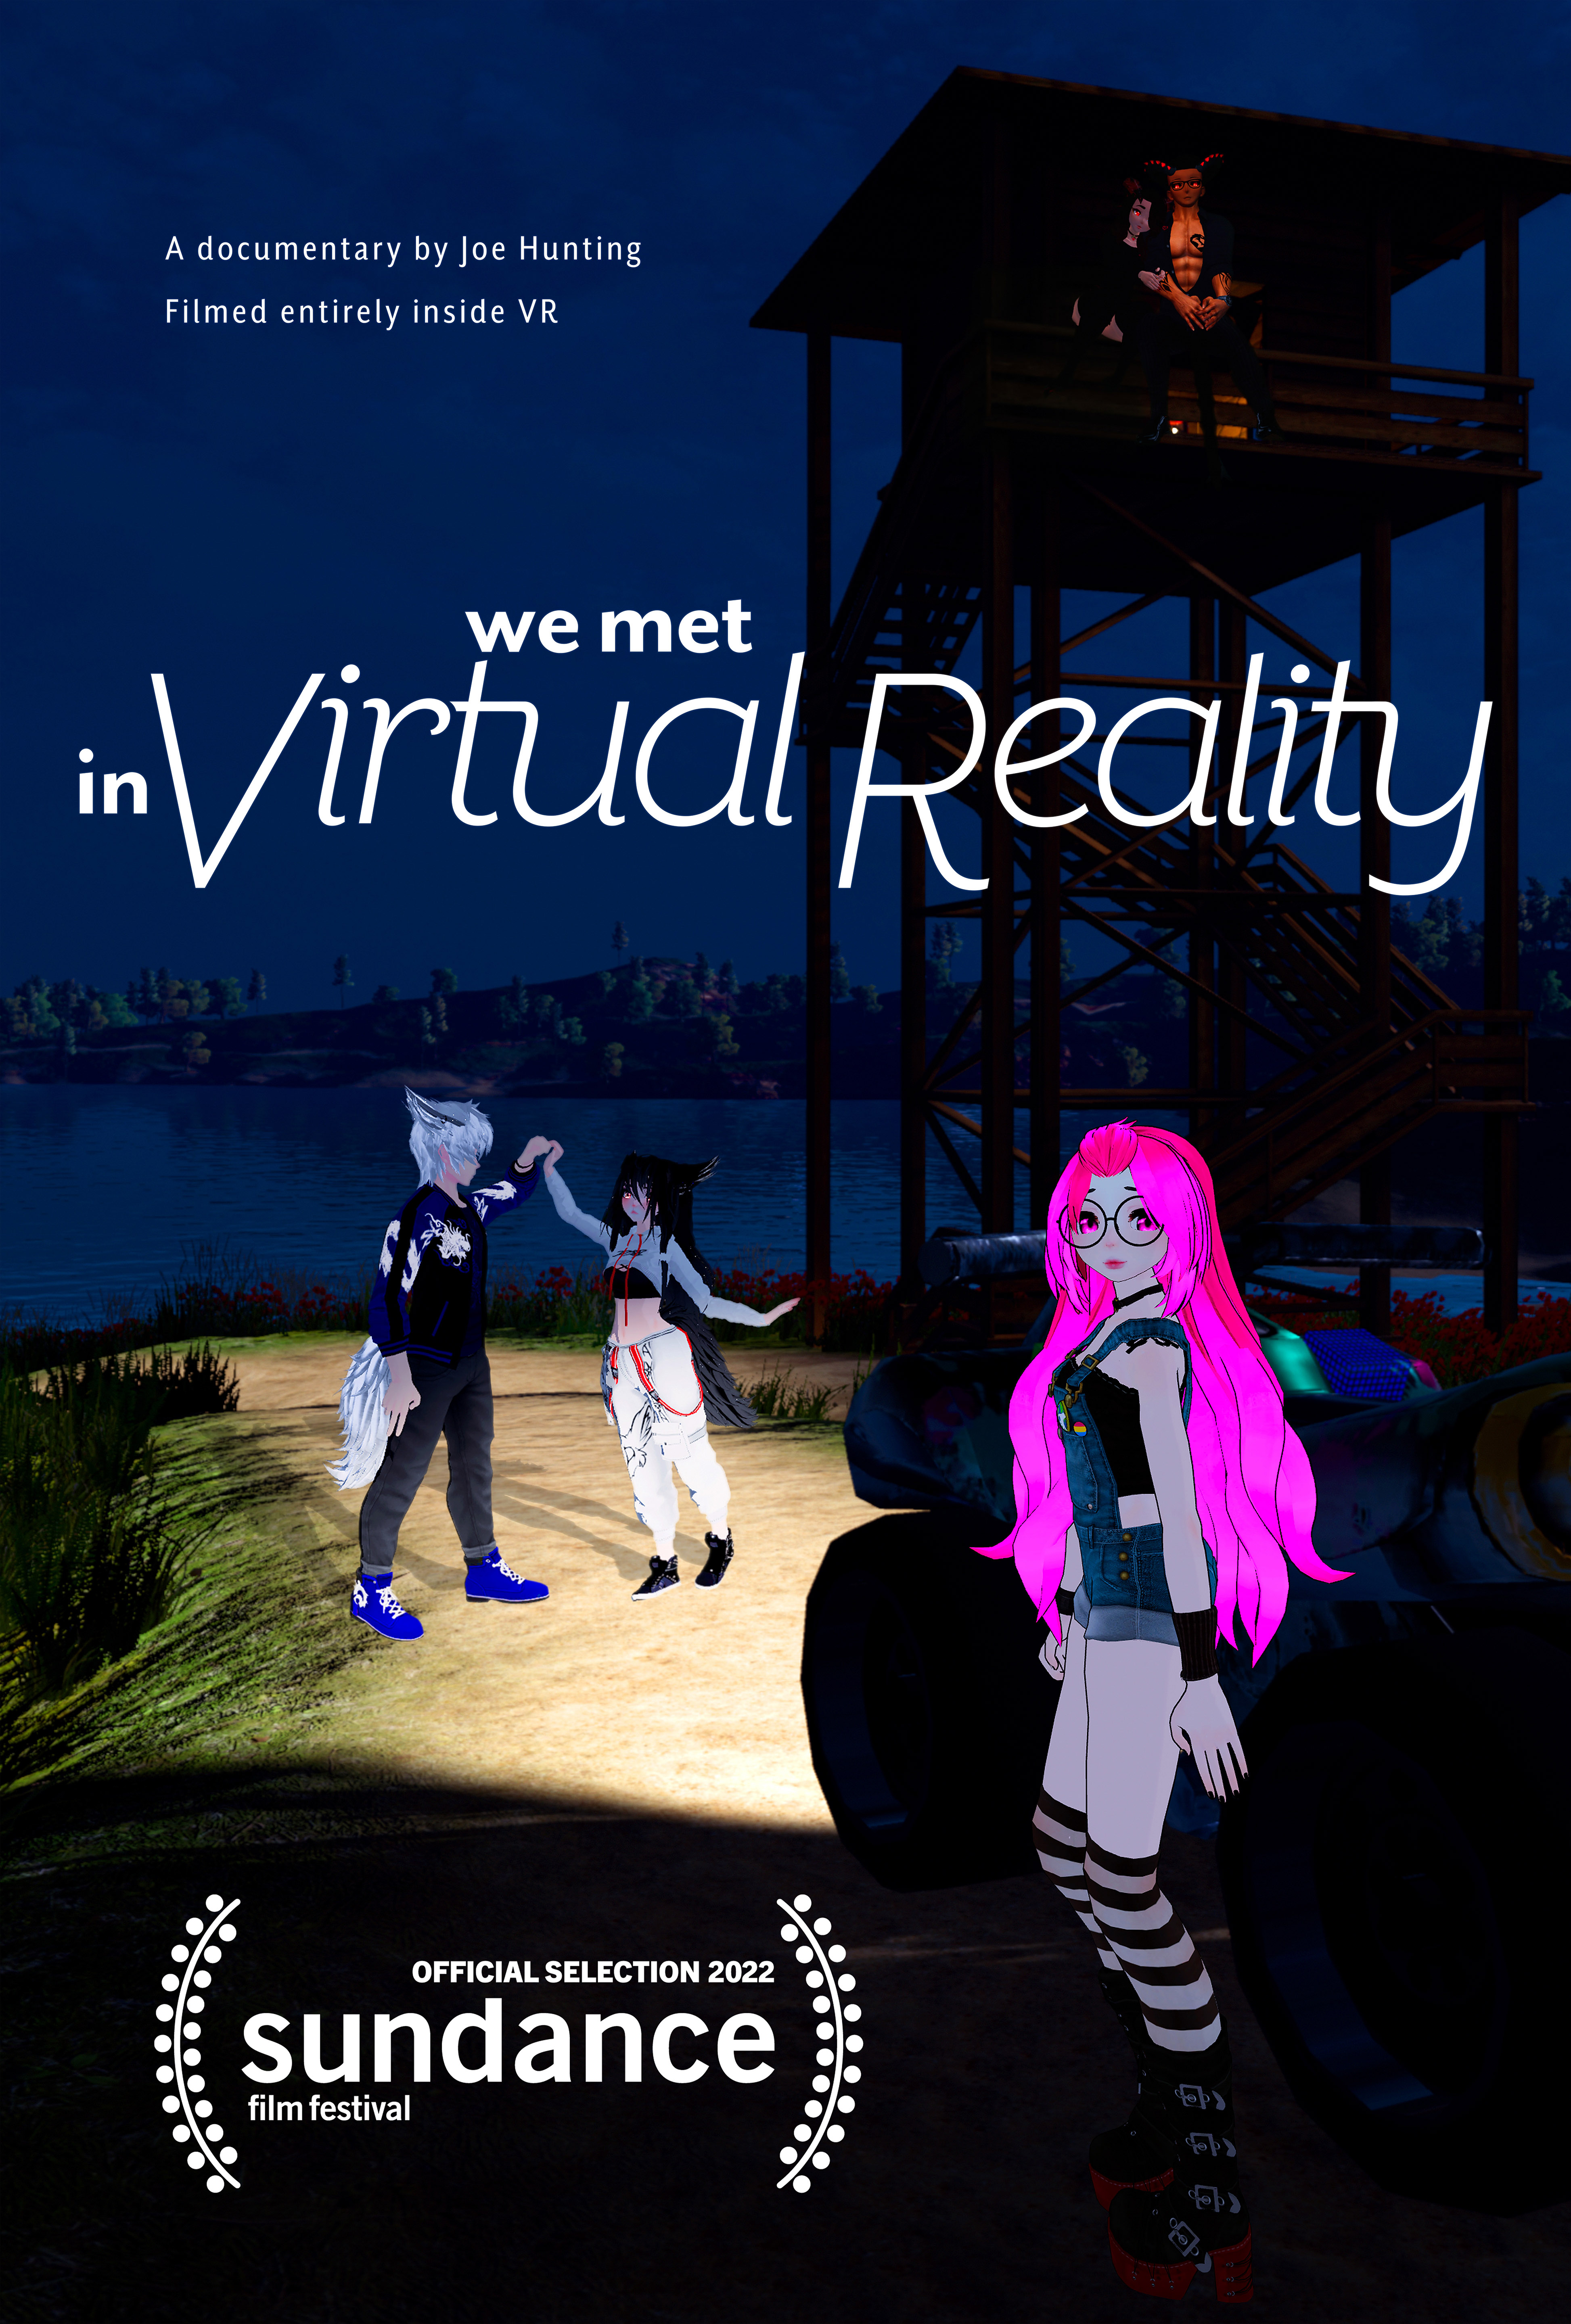 poznalismy-sie-w-wirtualnej-rzeczywistosci